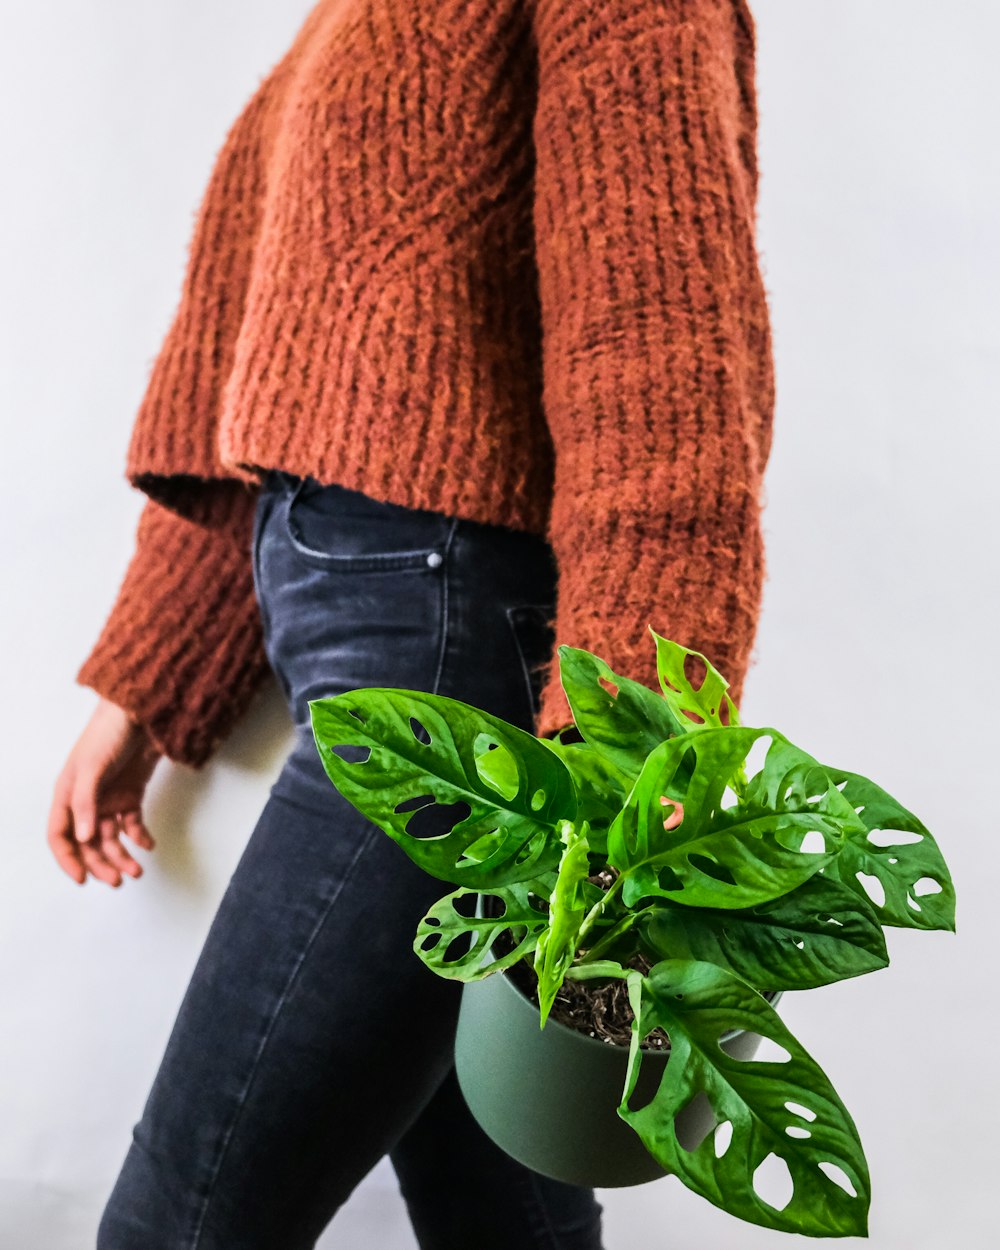 Personne en pull en tricot marron et jean en denim noir debout à côté de la plante verte